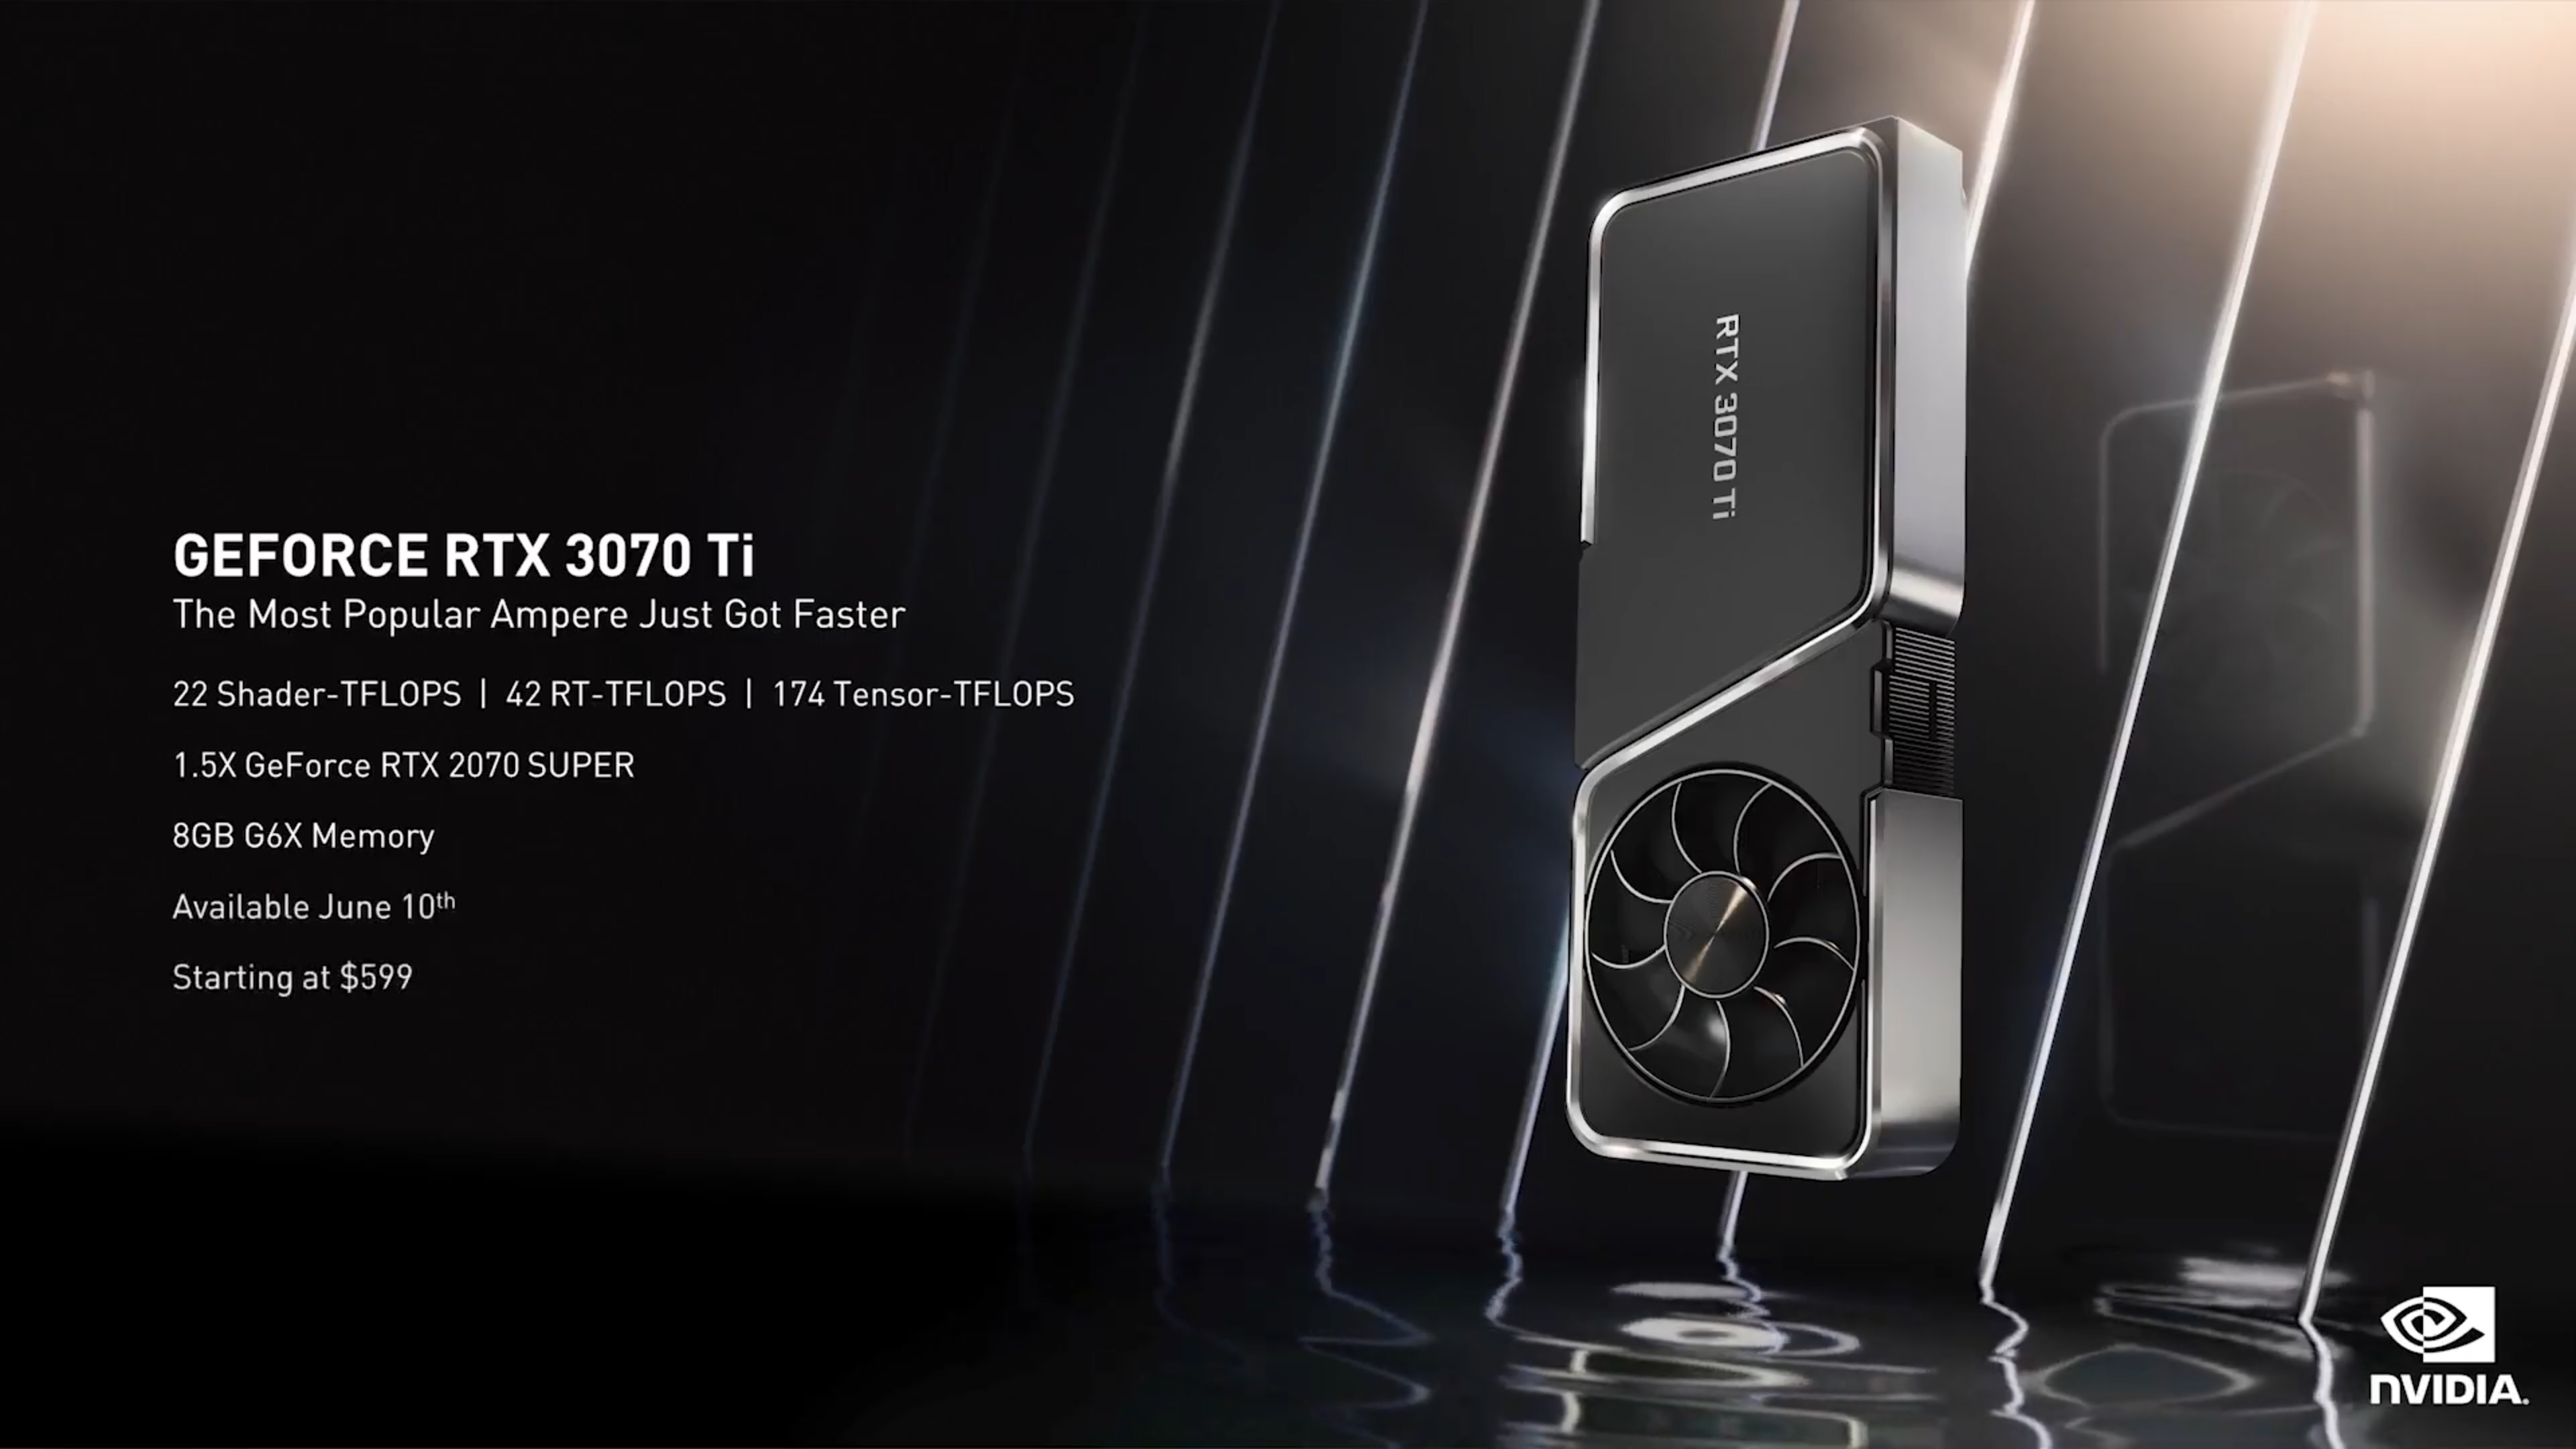 RTX 4060 Ti 16GB launches July 18 amid desperate price cuts